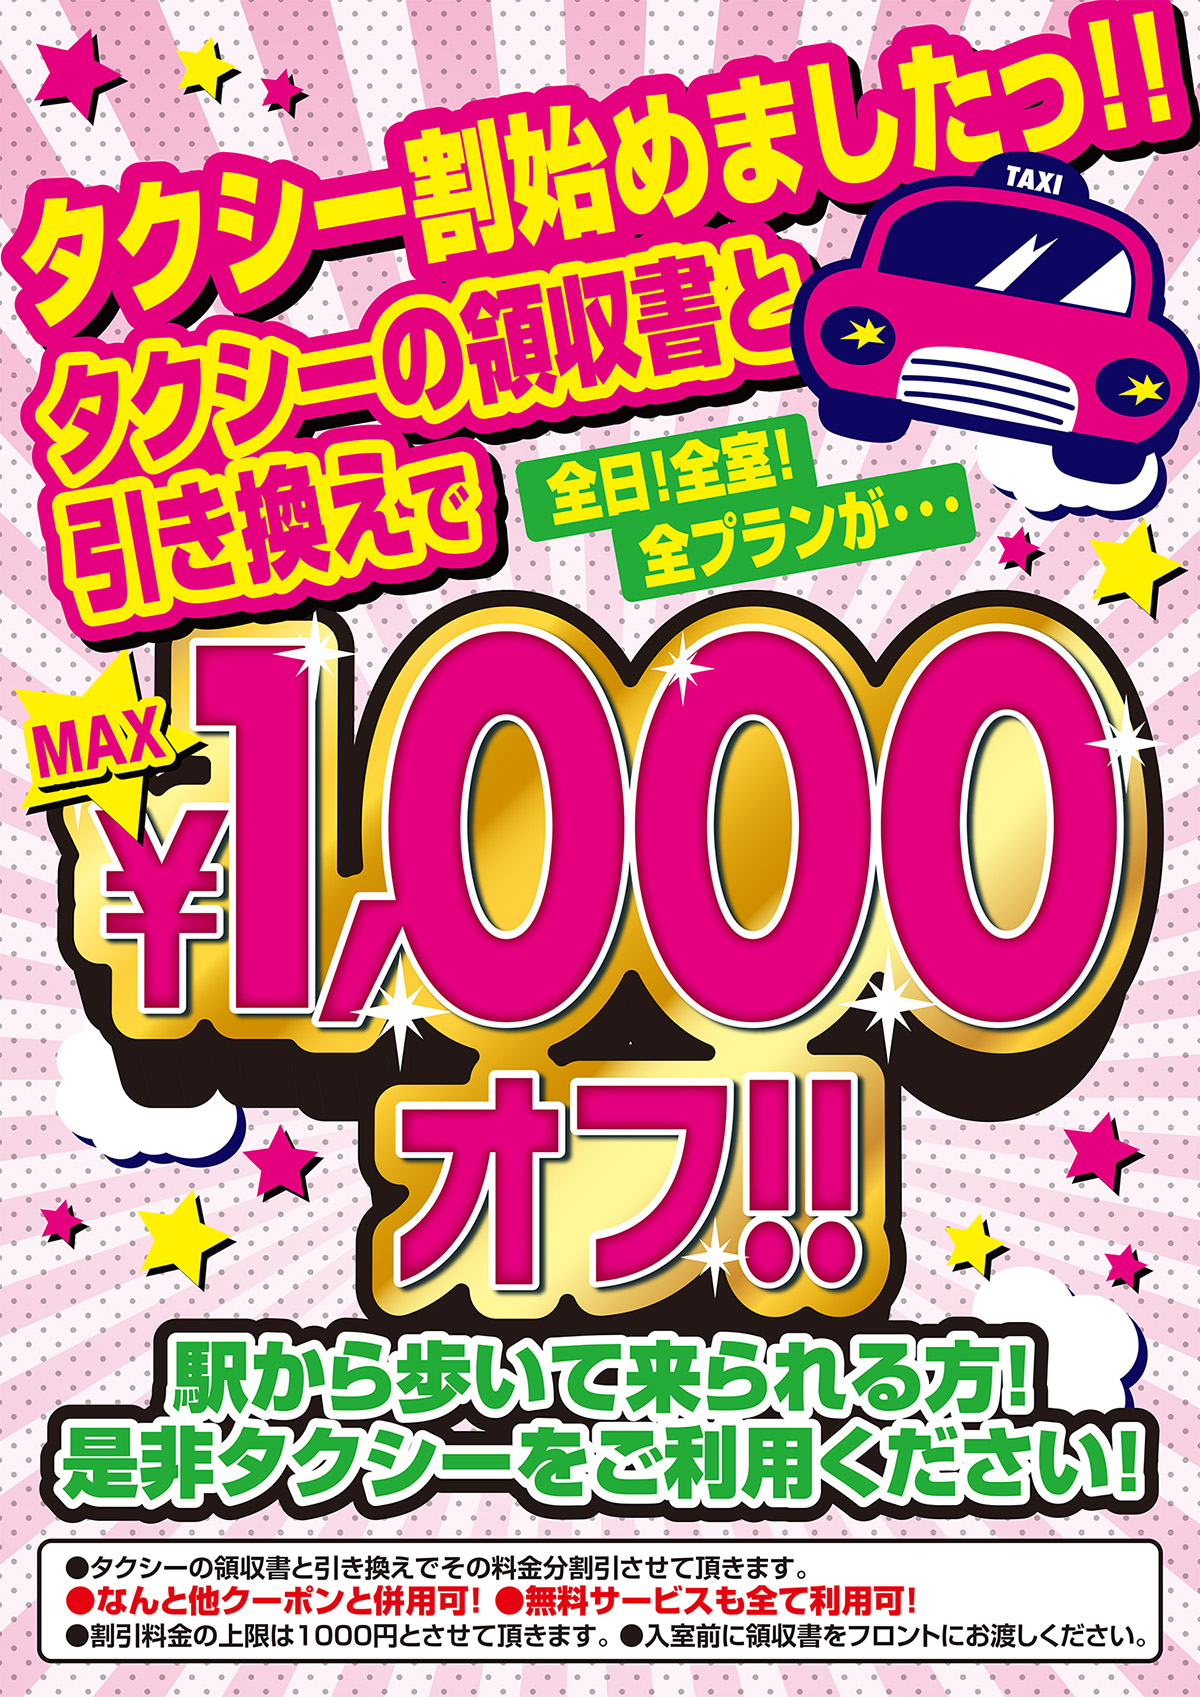 タクシー割引始めました 領収書と引き換えで最大1,000円OFF!!